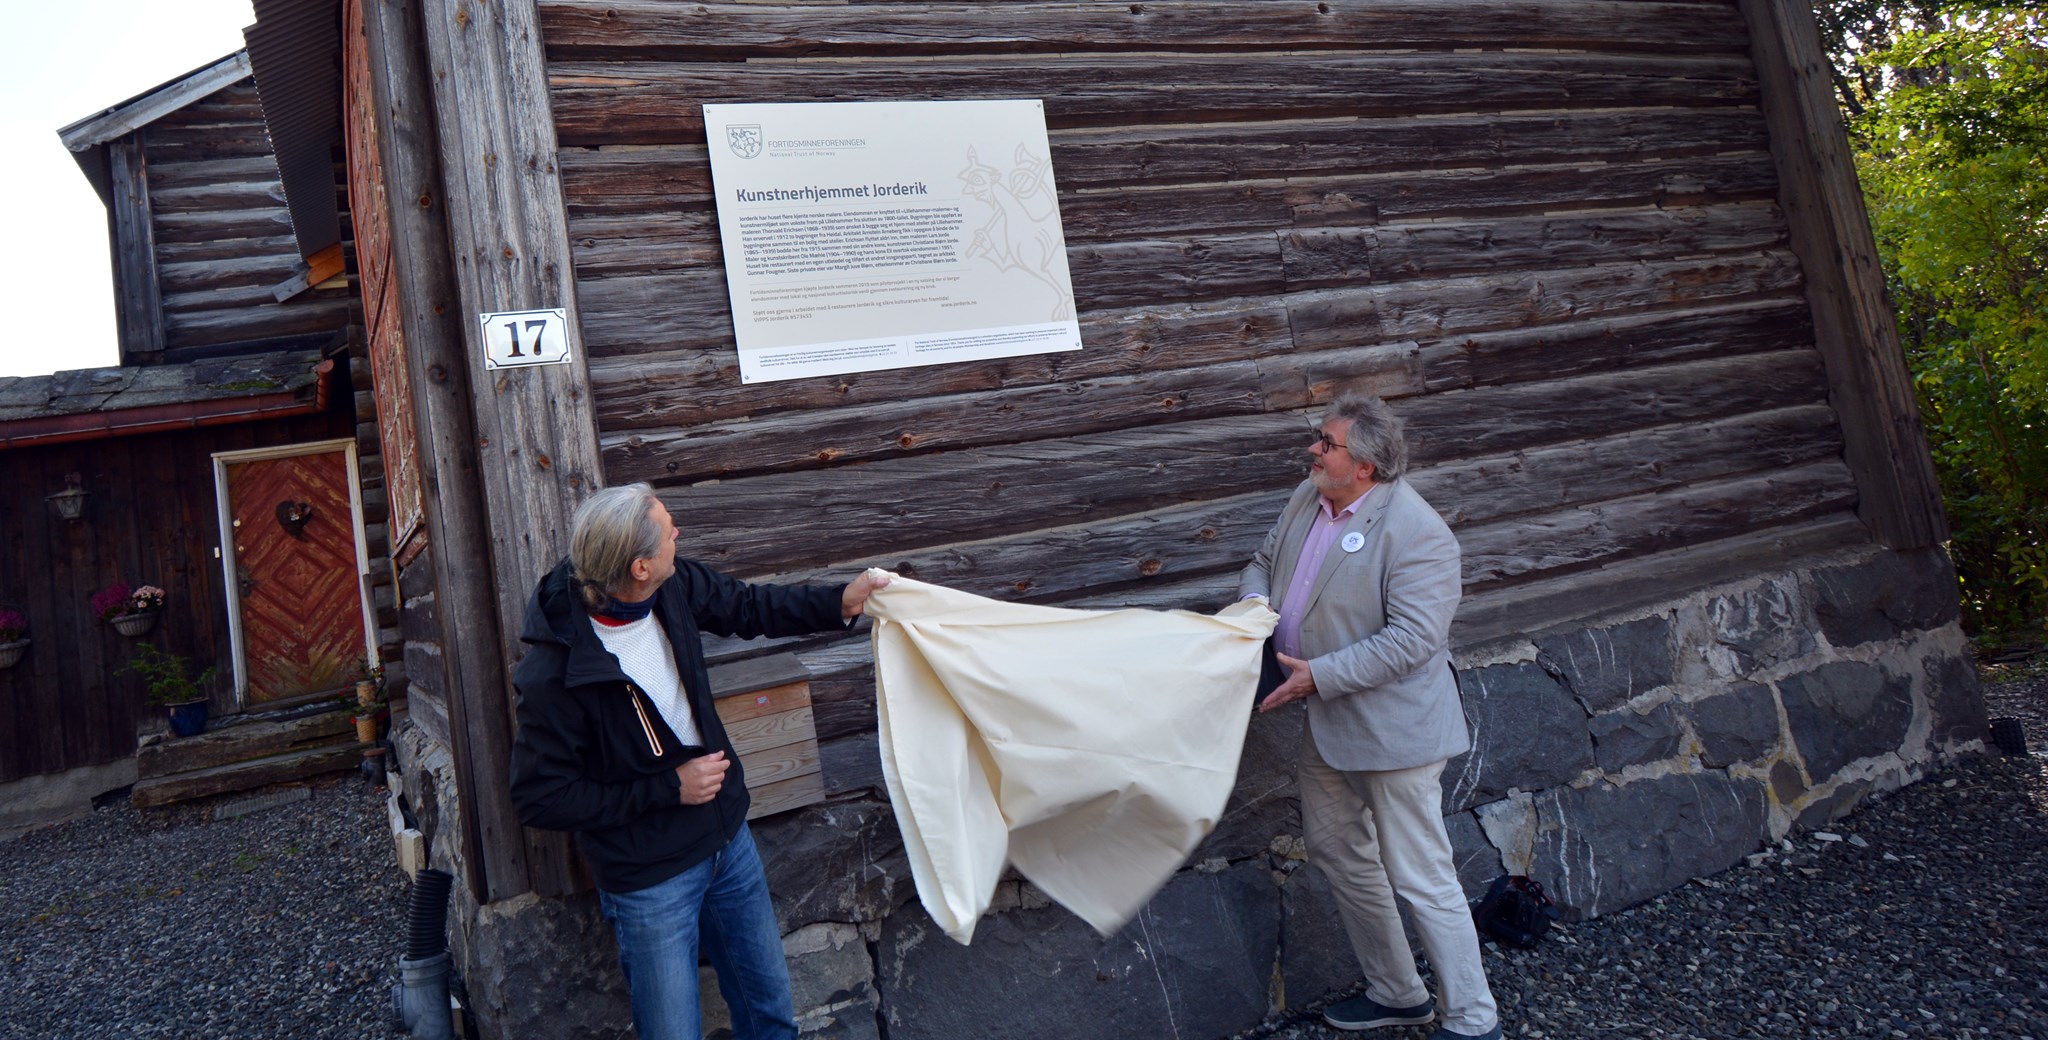 Generalsekretær Ola H. Fjeldheim og Kåre Hosar, leder for Oppland avdeling, sto for avdukingen av skiltet som forteller om kunstnerhjemmet Jorderik og foreningens nye prosjekt. 